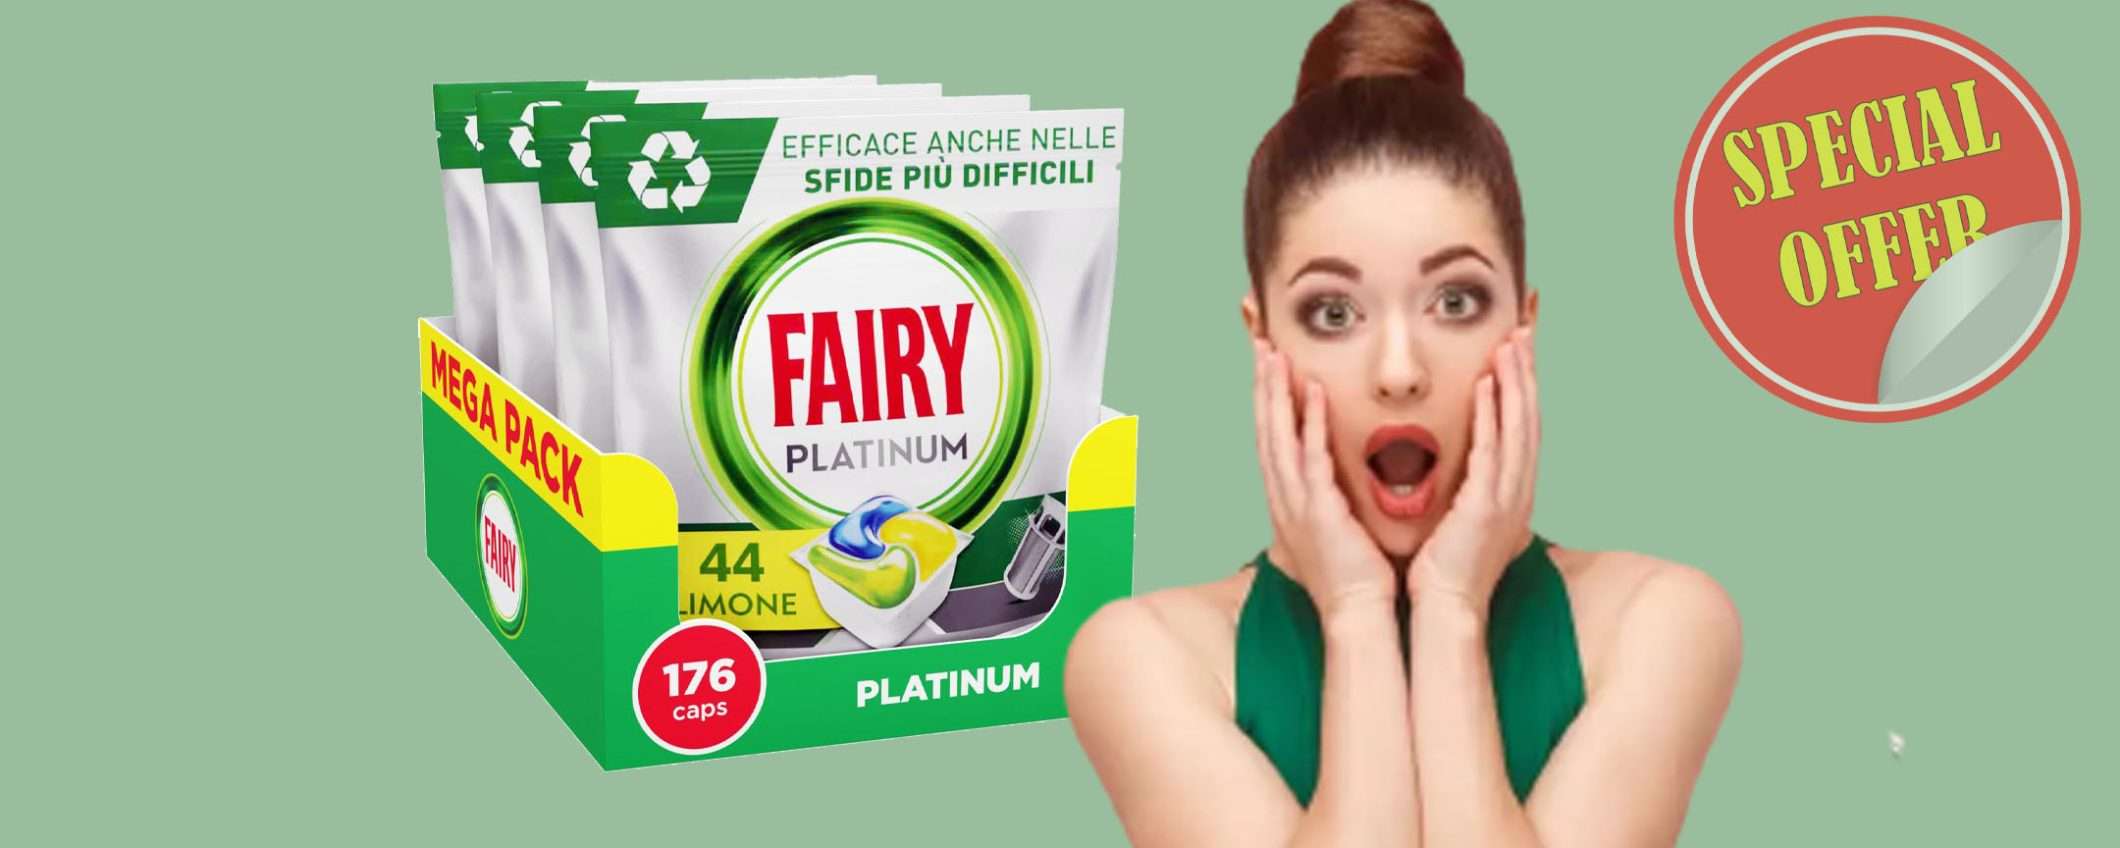 Fairy Platinum (176 capsule) al prezzo PICCOLISSIMO (-27%)